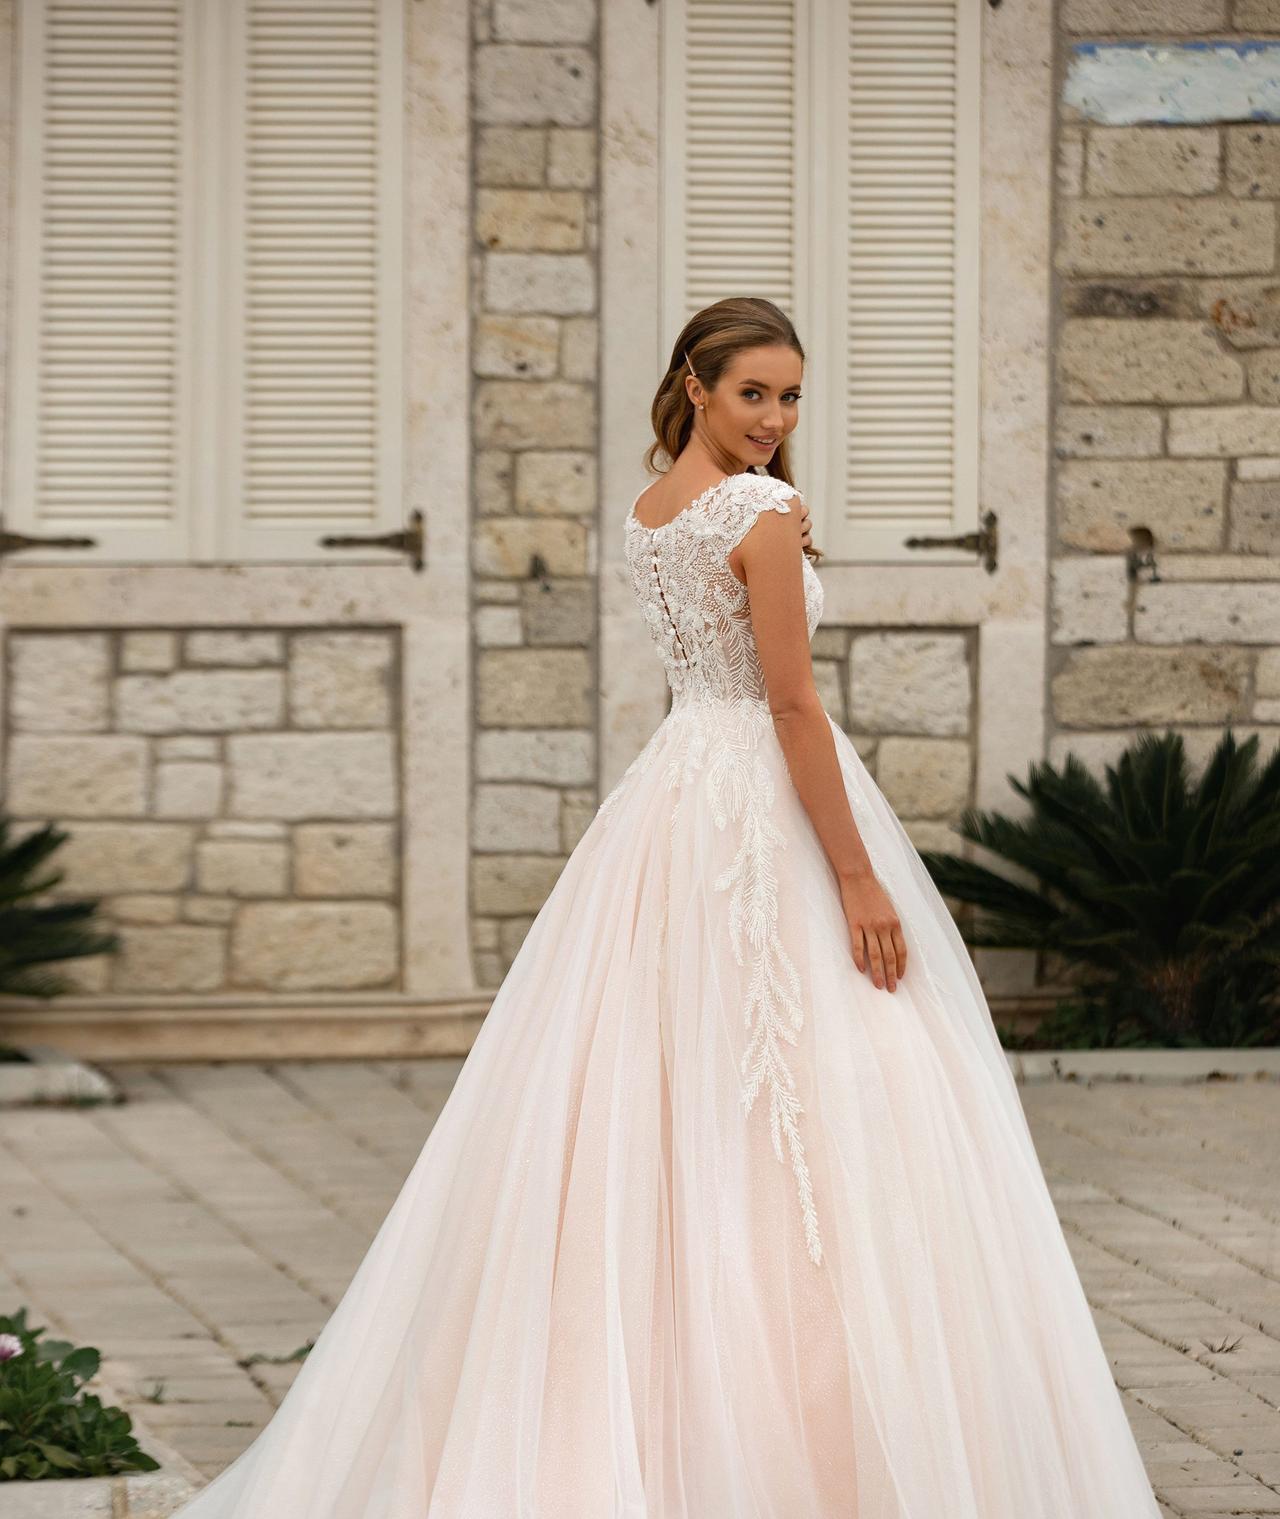 Orbita Restricciones Delicioso 100 vestidos de novia de corte princesa para tu boda. ¿Lista para volverte  a enamorar?